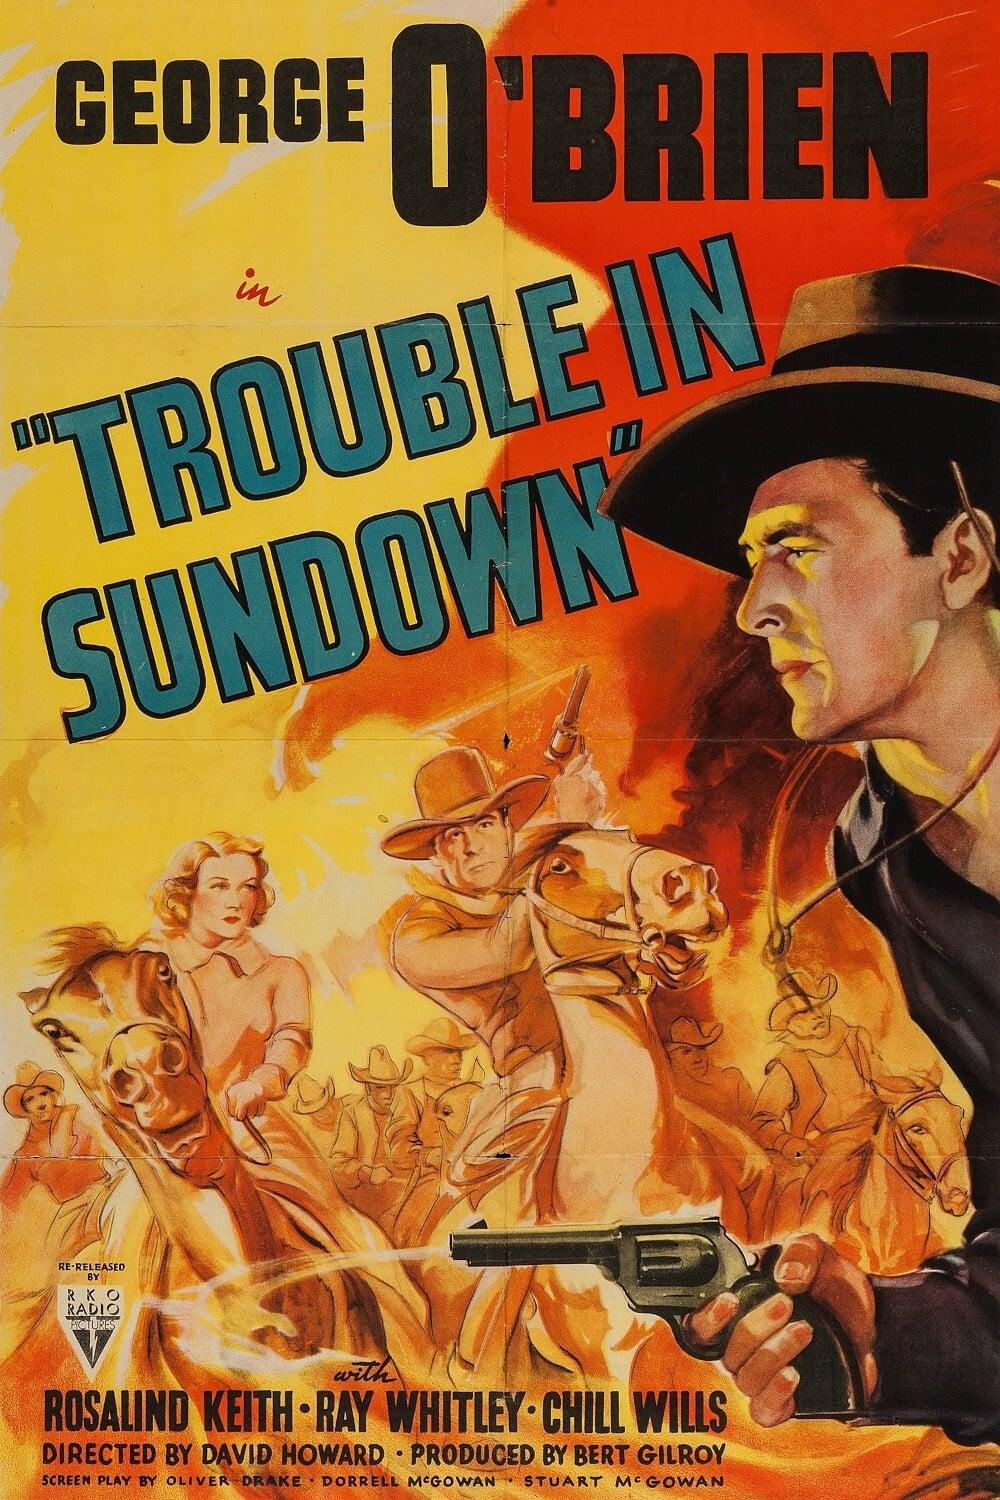 Trouble in Sundown poster